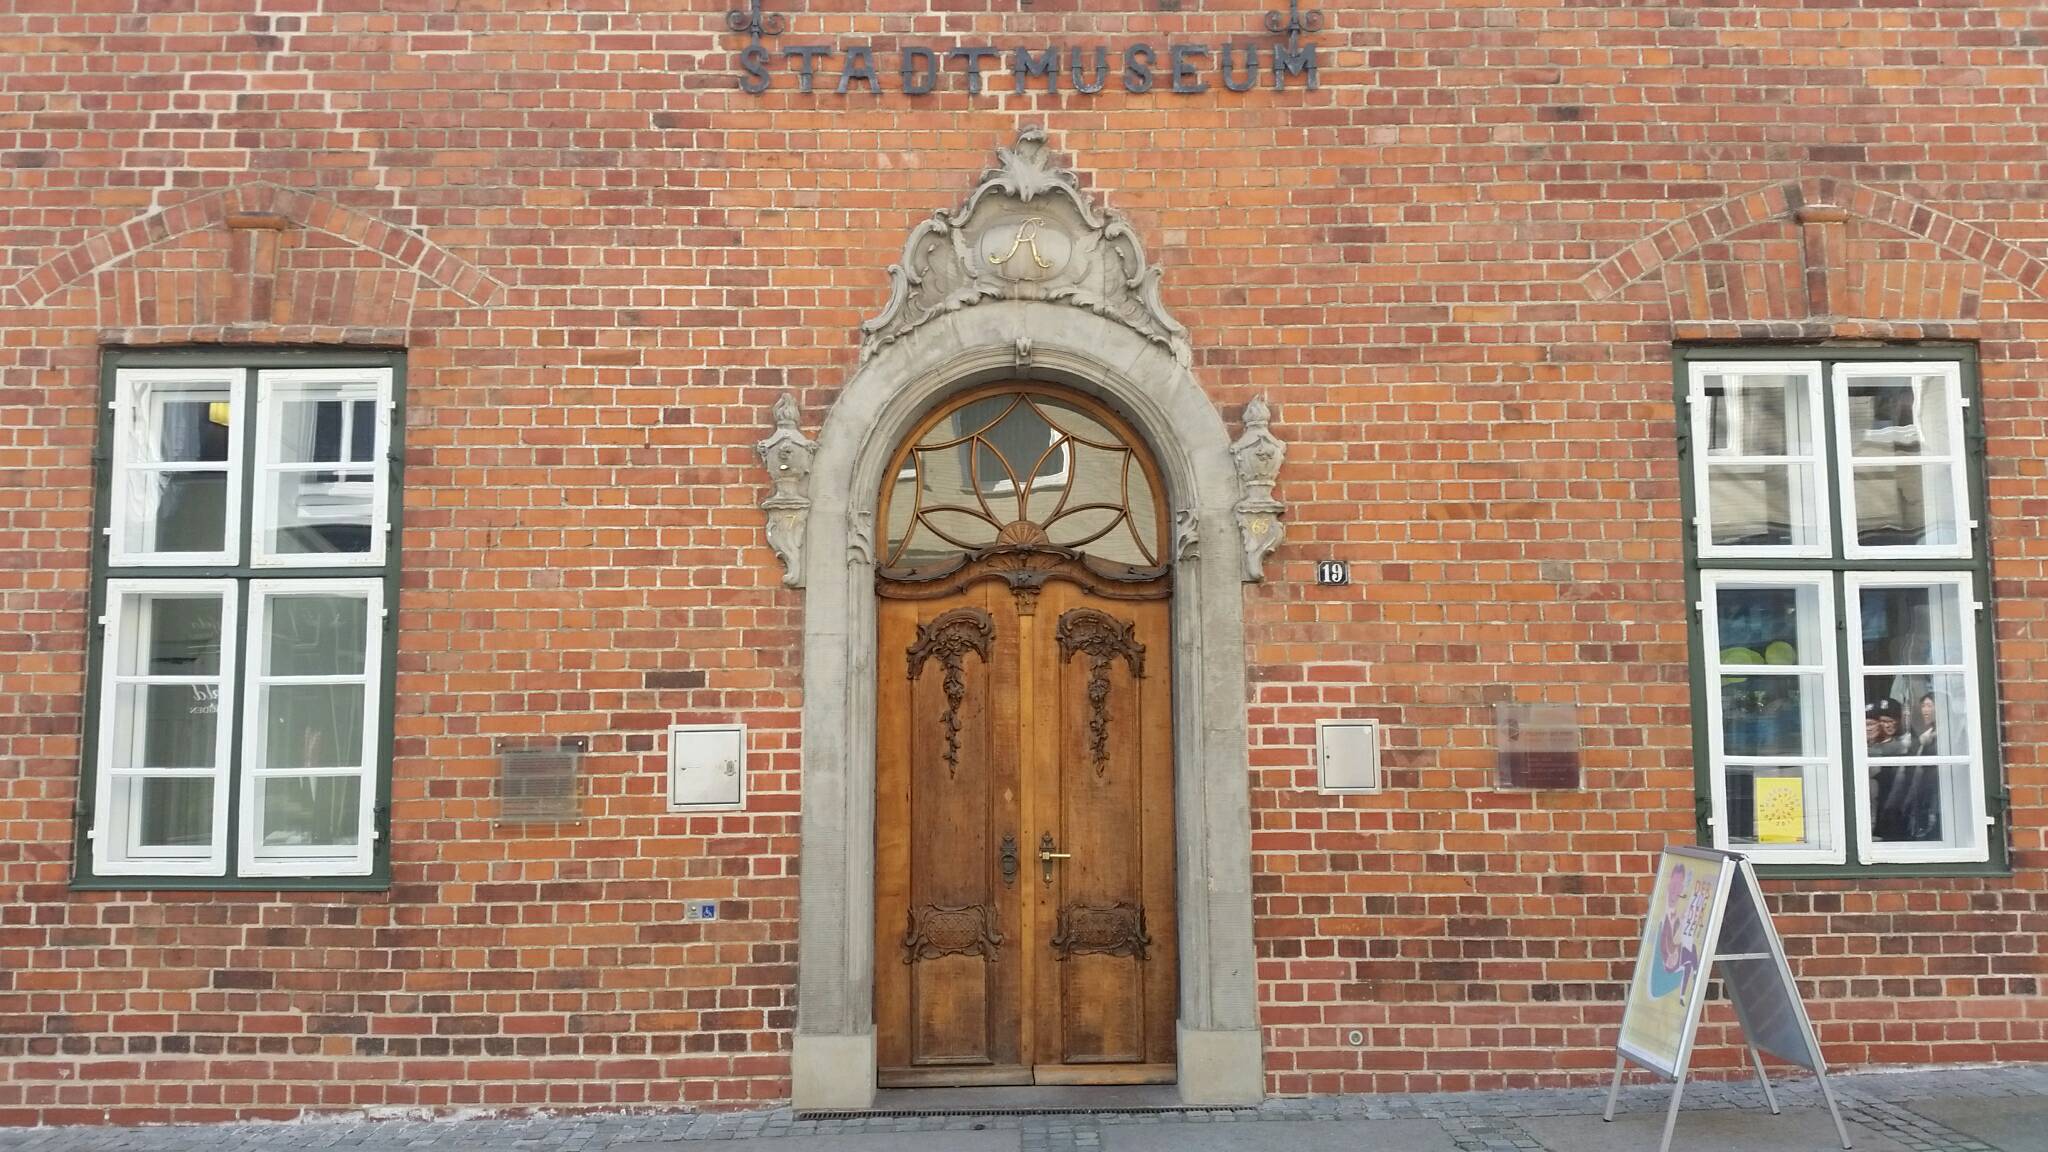 Stadtmuseum "Warleberger Hof" in Kiel